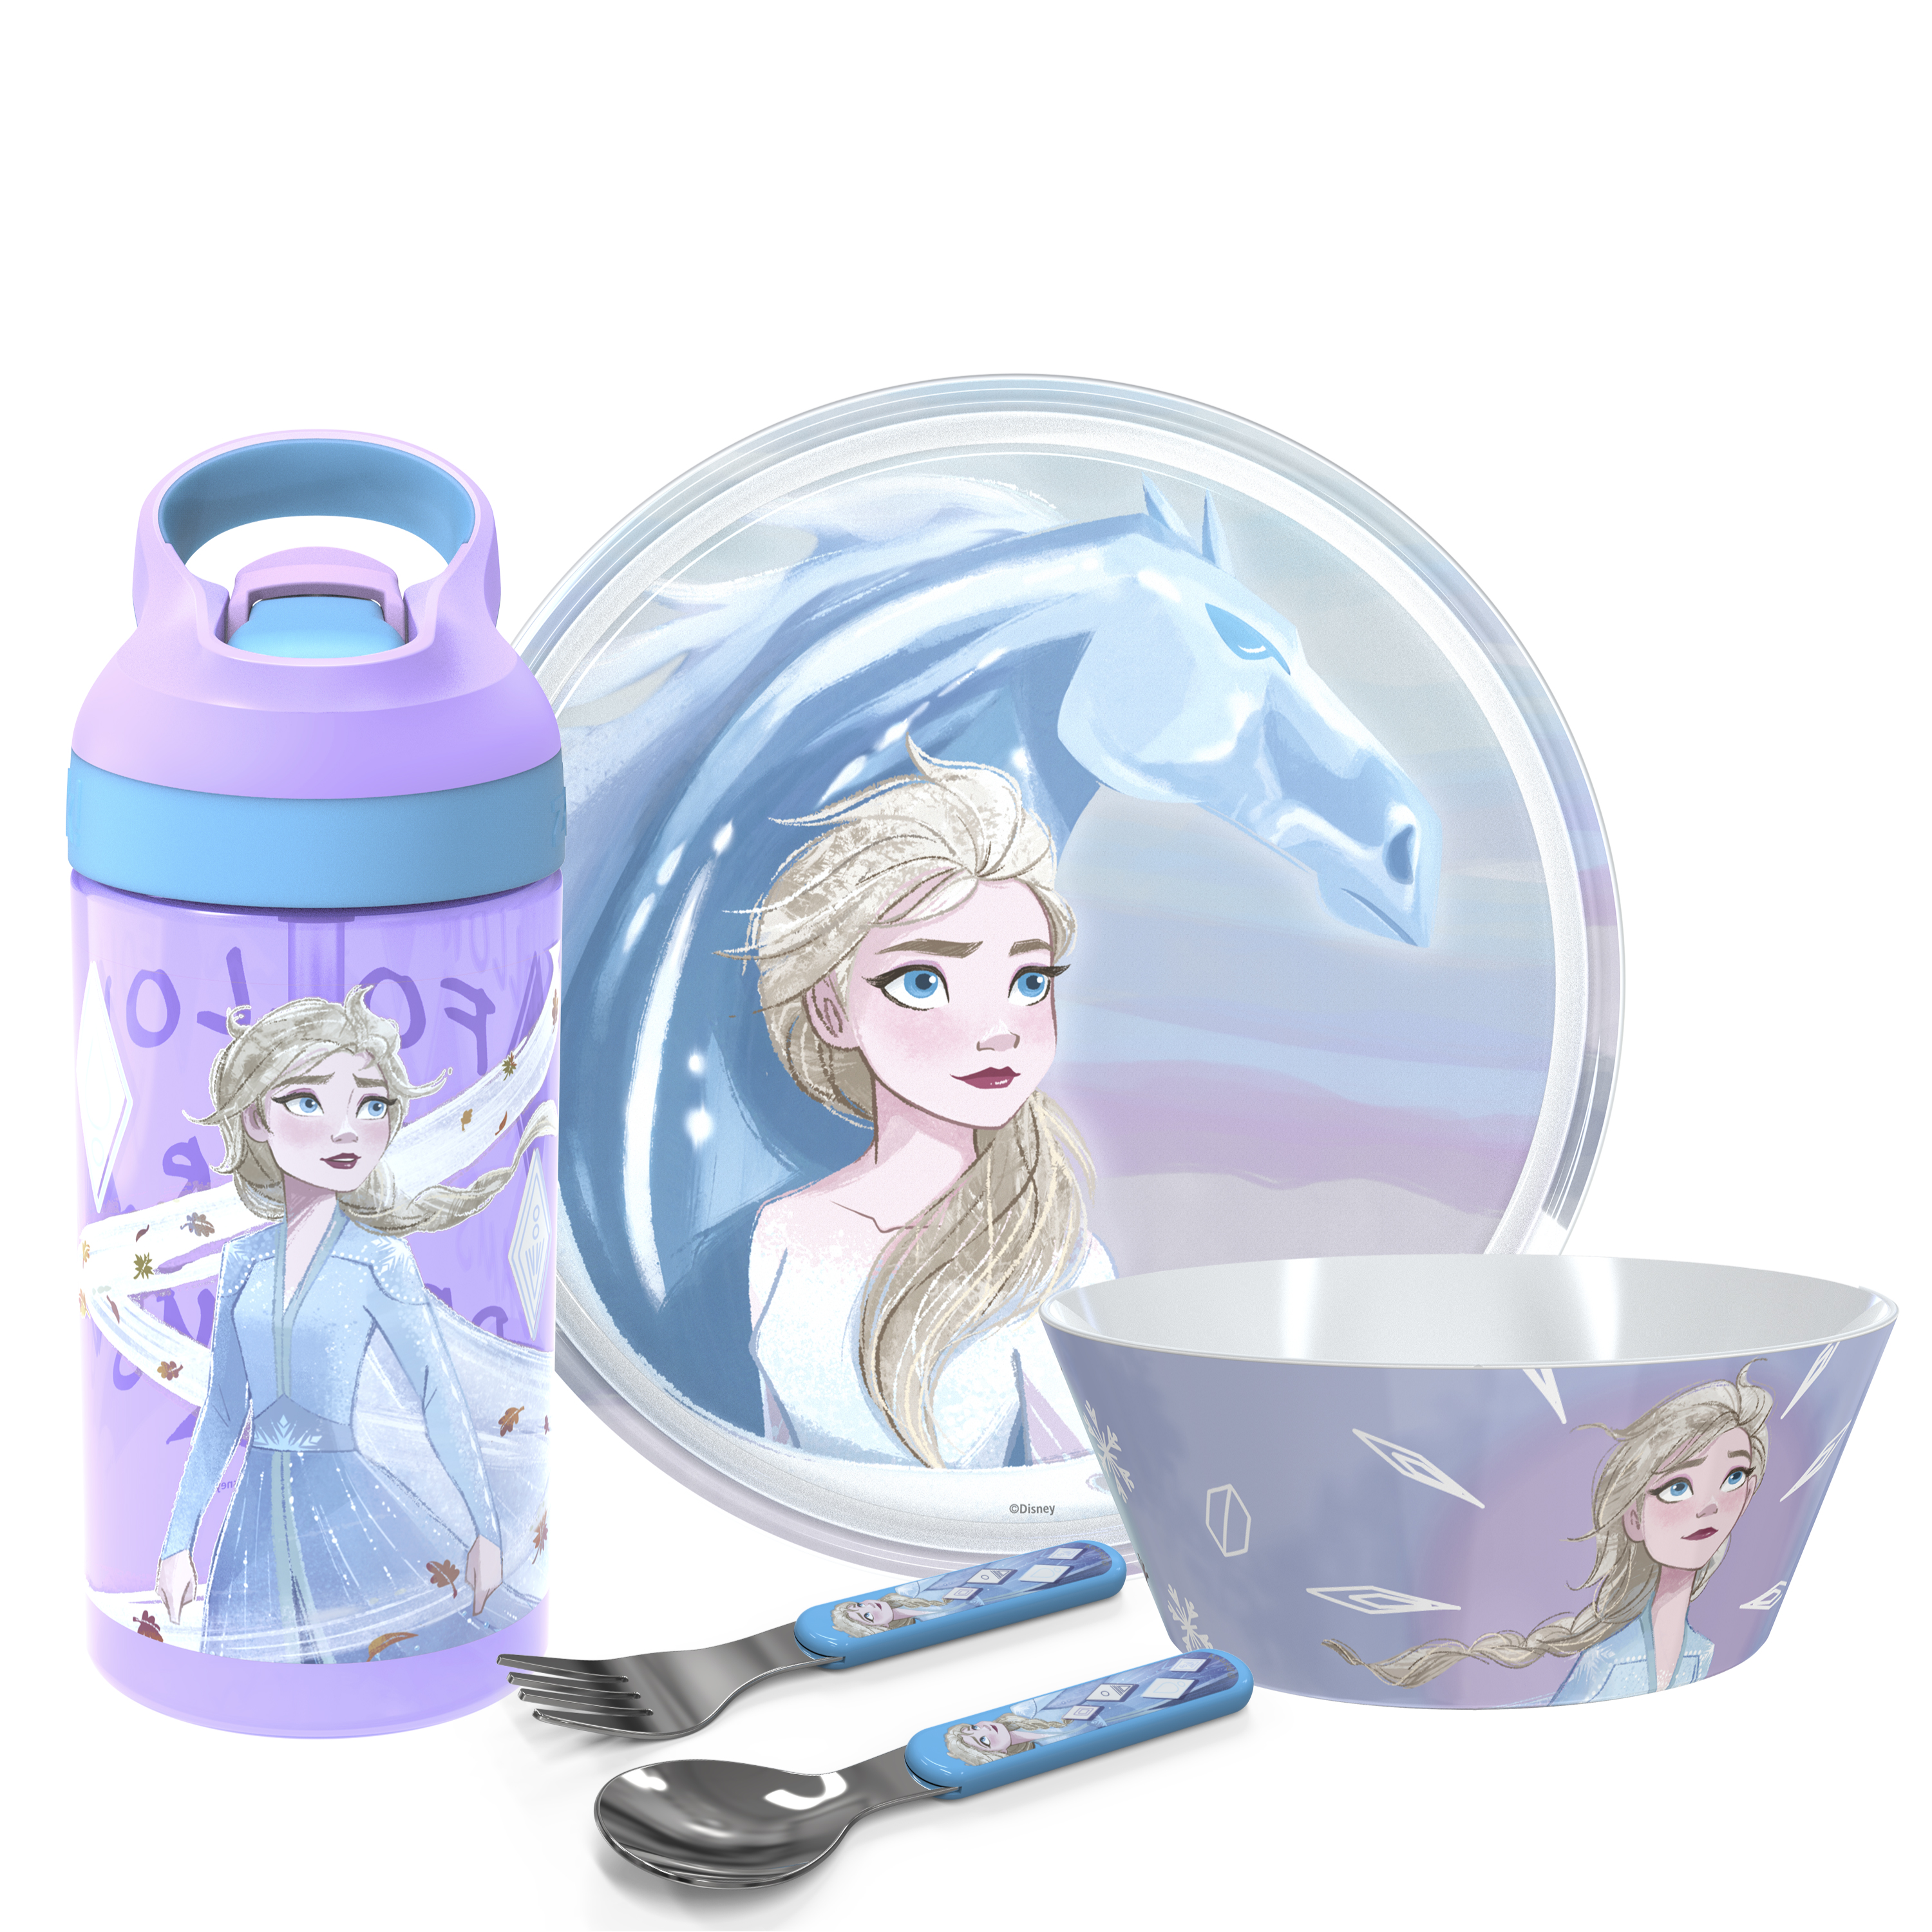 Disney Frozen 2 Movie Dinnerware Set, Anna and Elsa, 5-piece set slideshow image 1